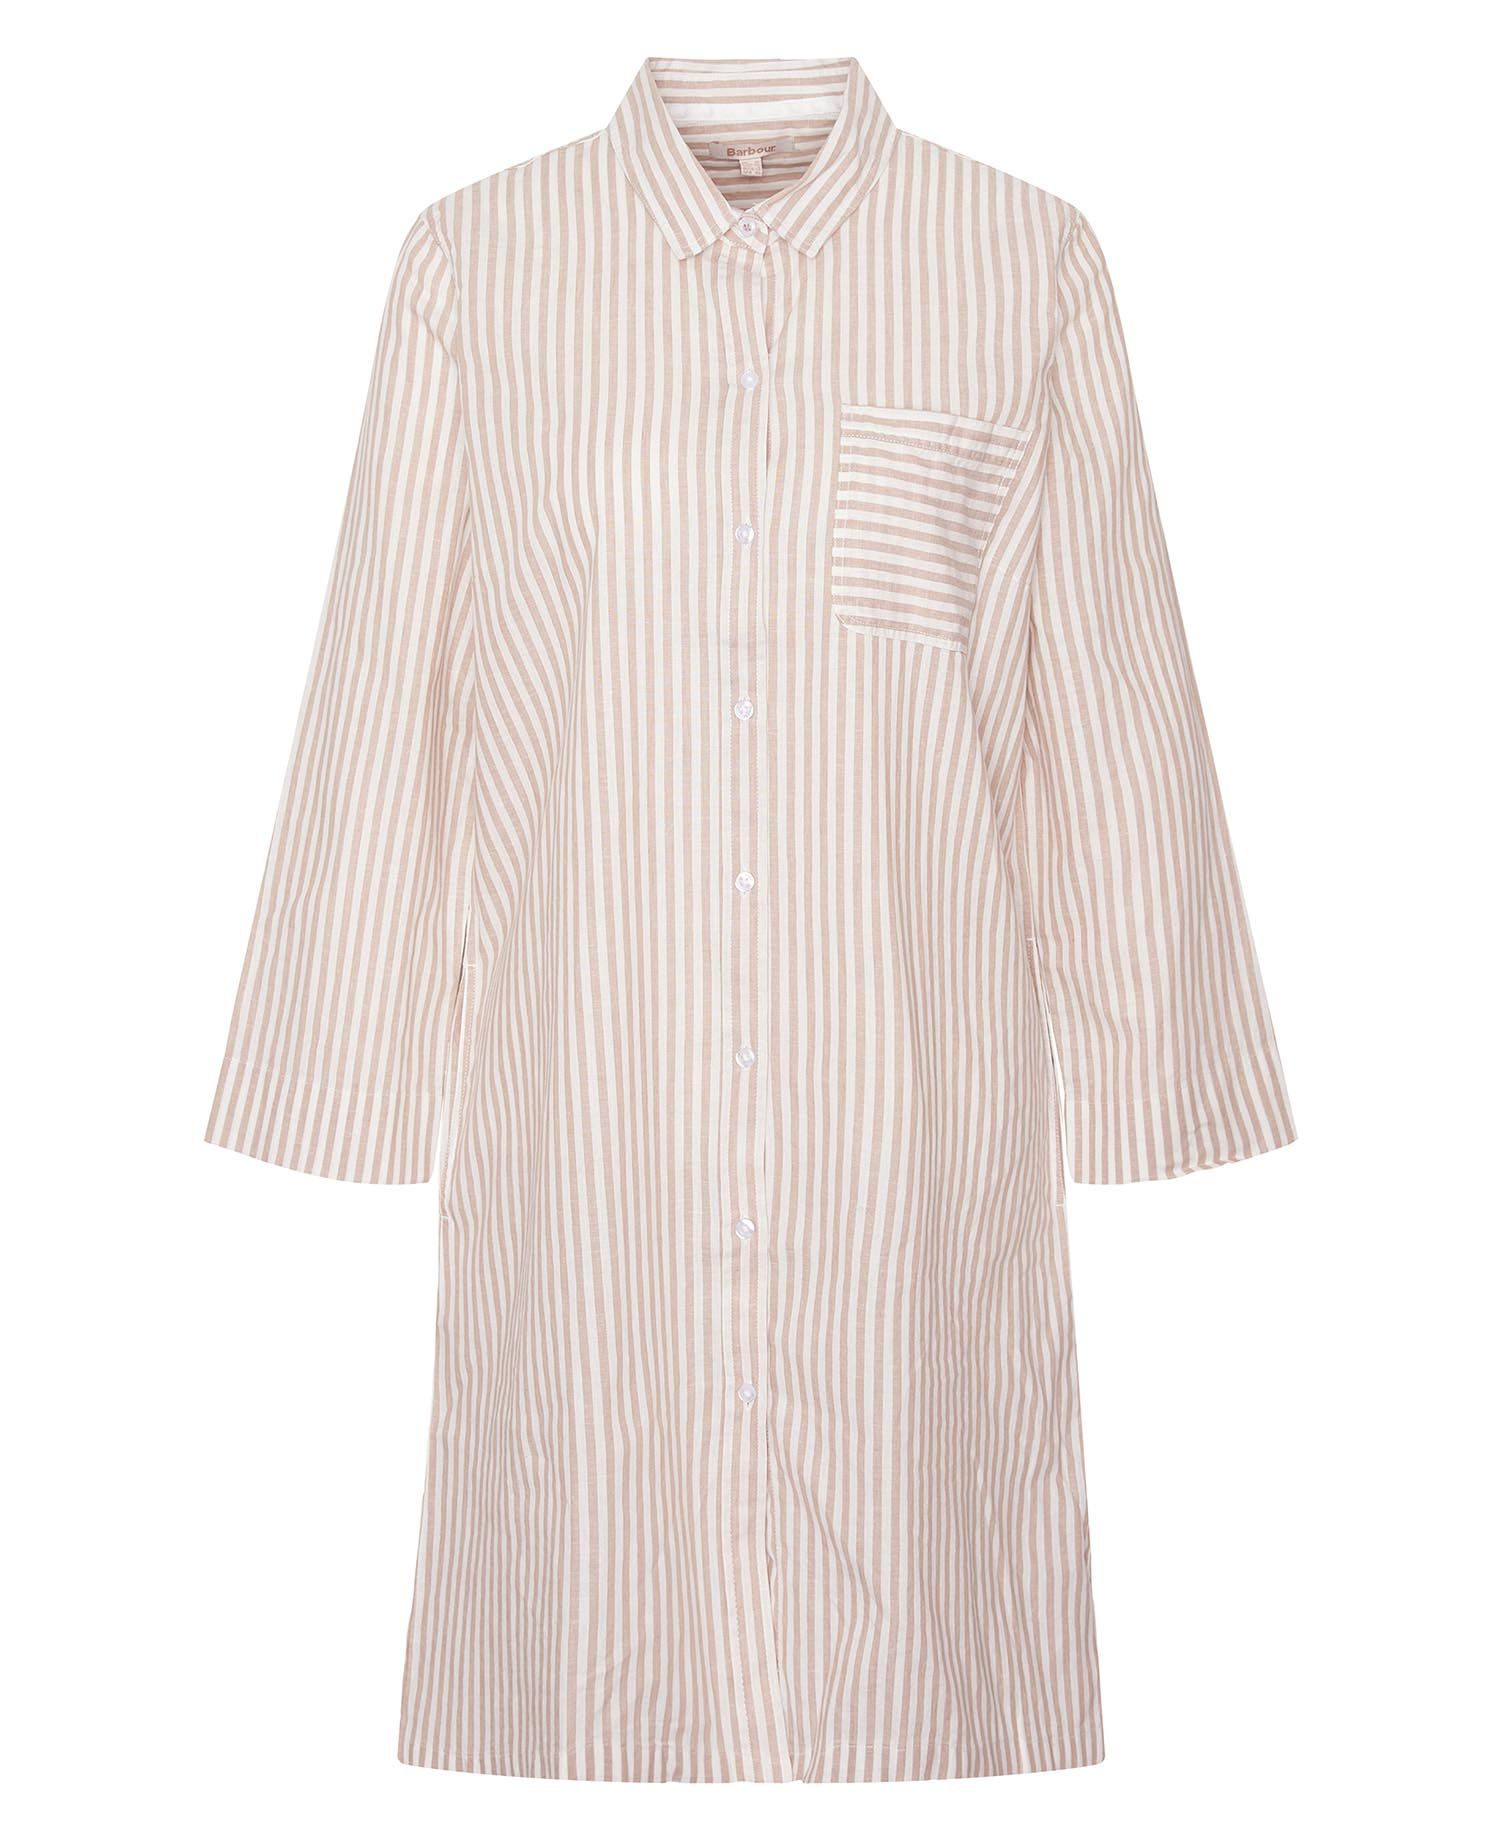 Seaglow Striped Shirt Dress